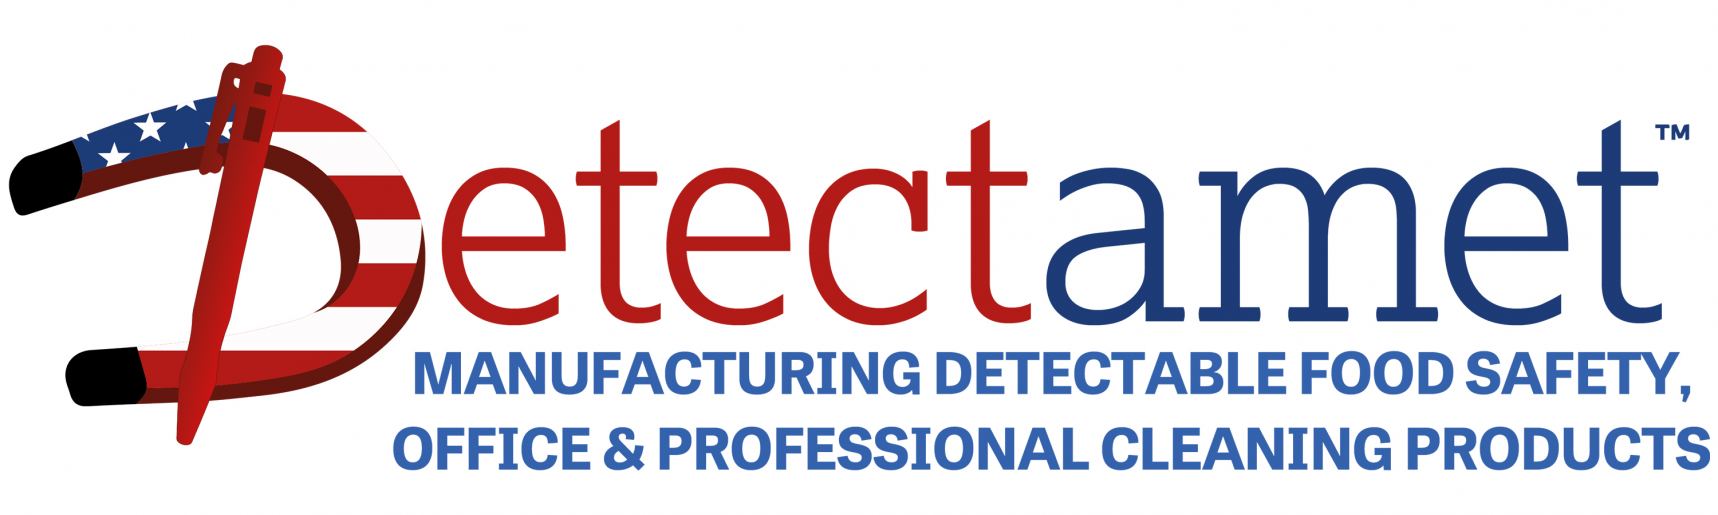 DetectametInc Logo